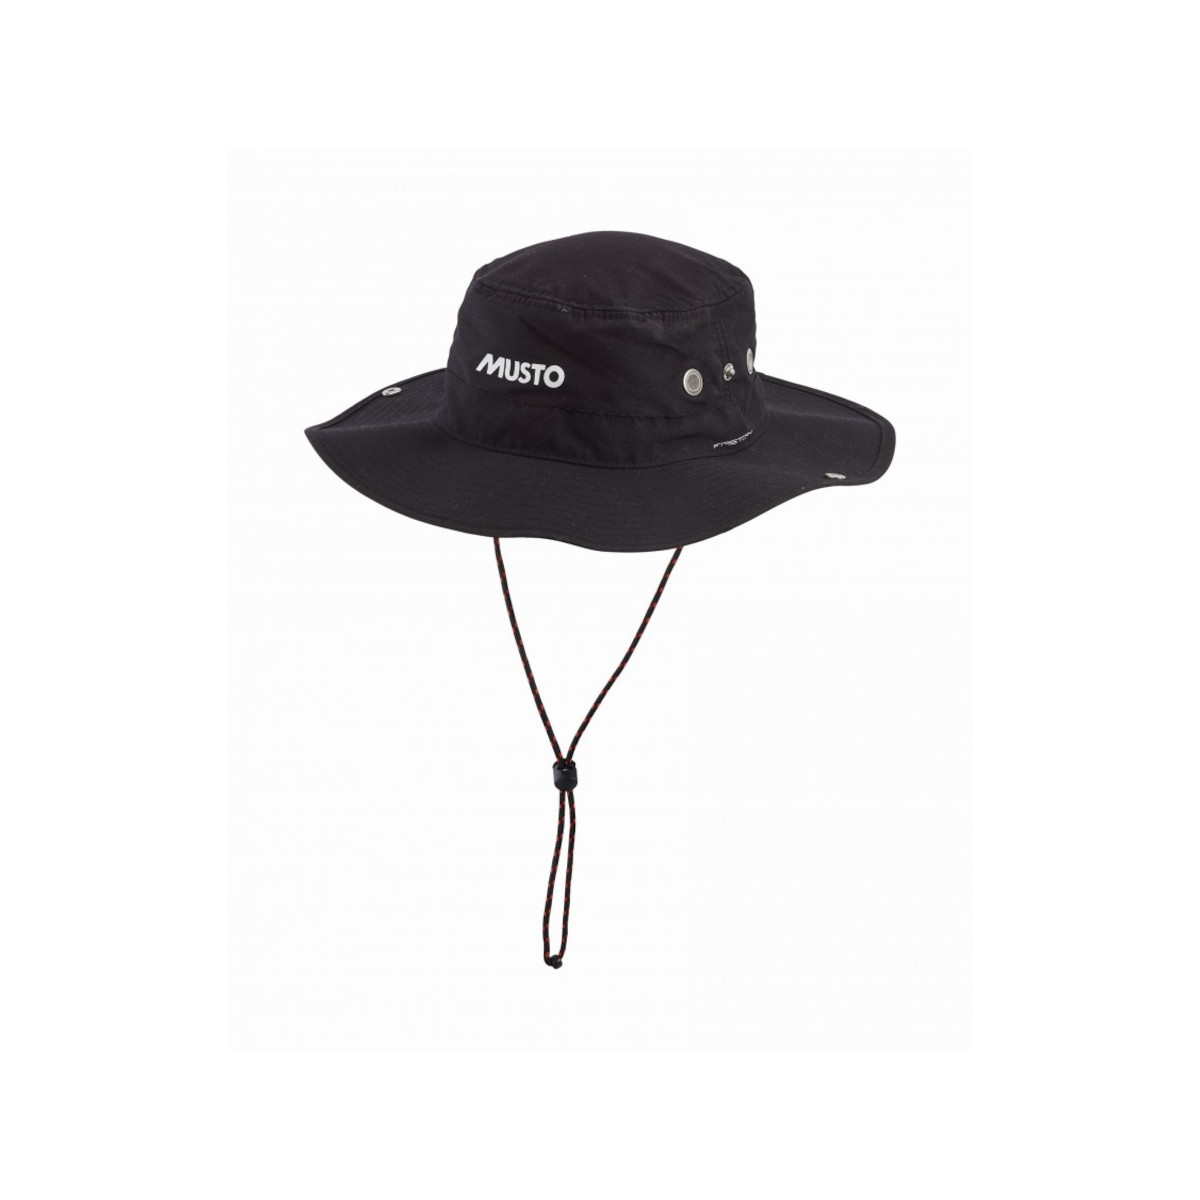 Musto Evolution FD Brimmed chapeau de voile noir, taille S